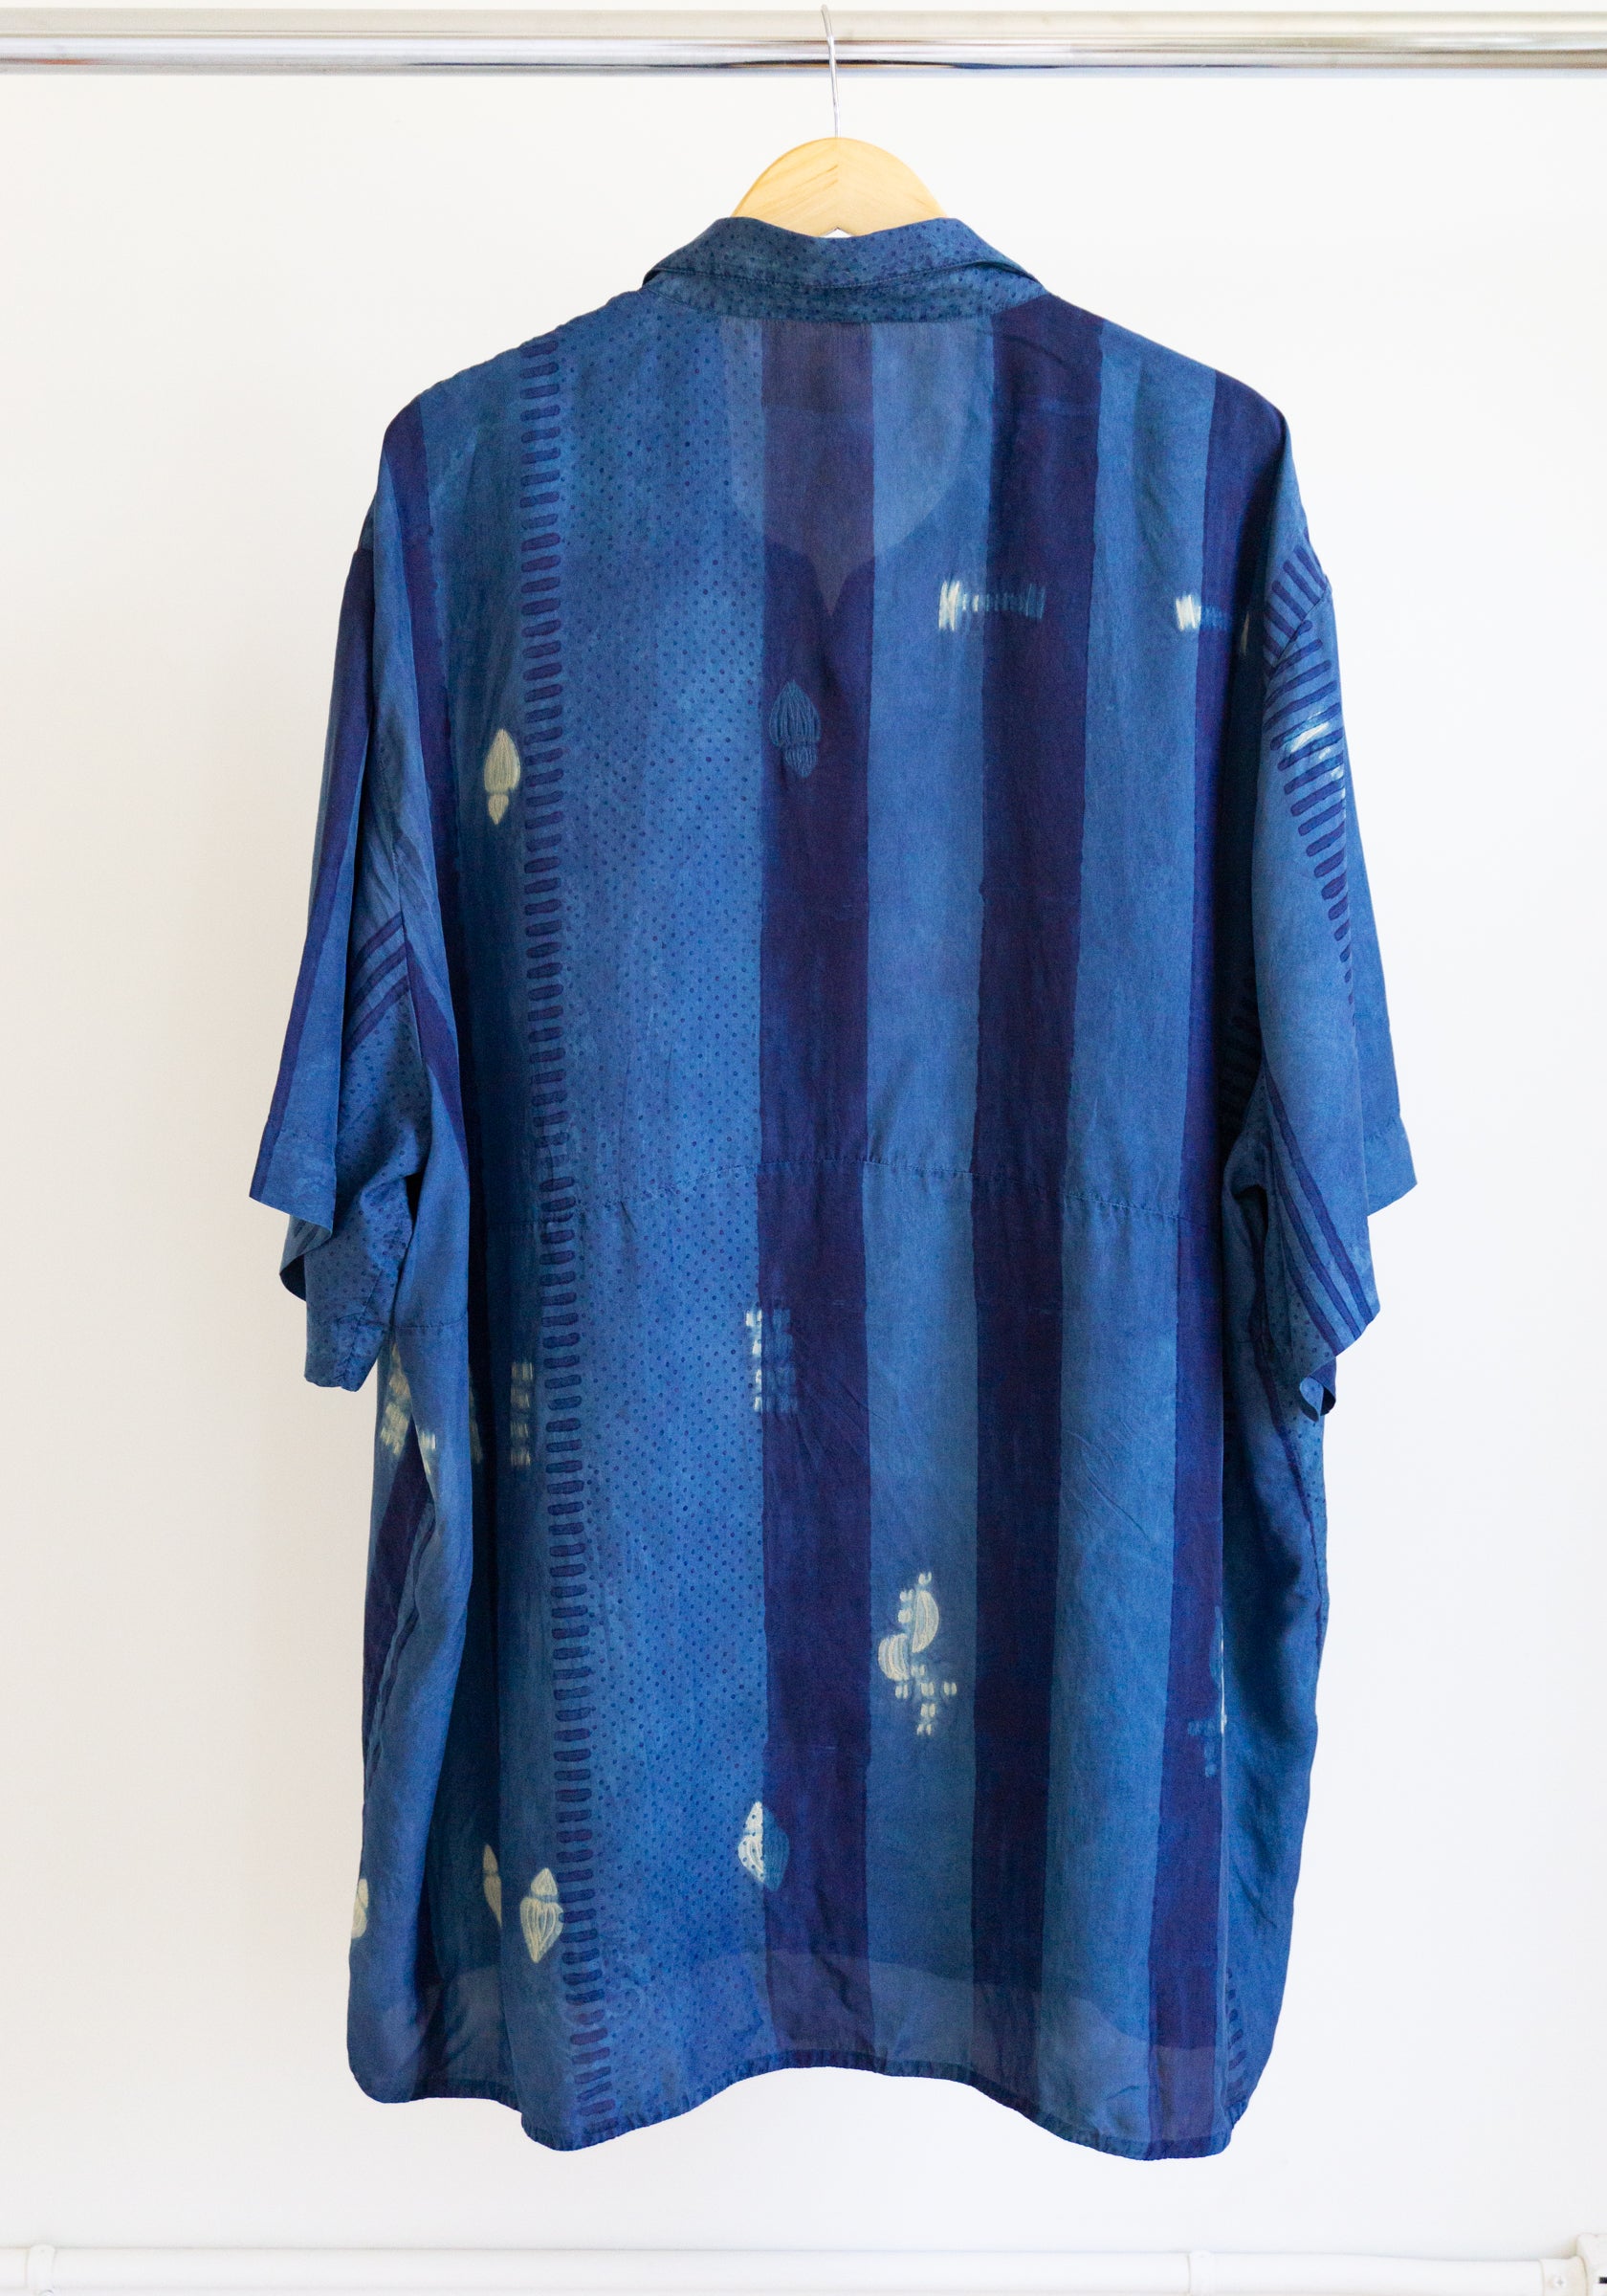 11.11 Silk Shirt in Medium Indigo